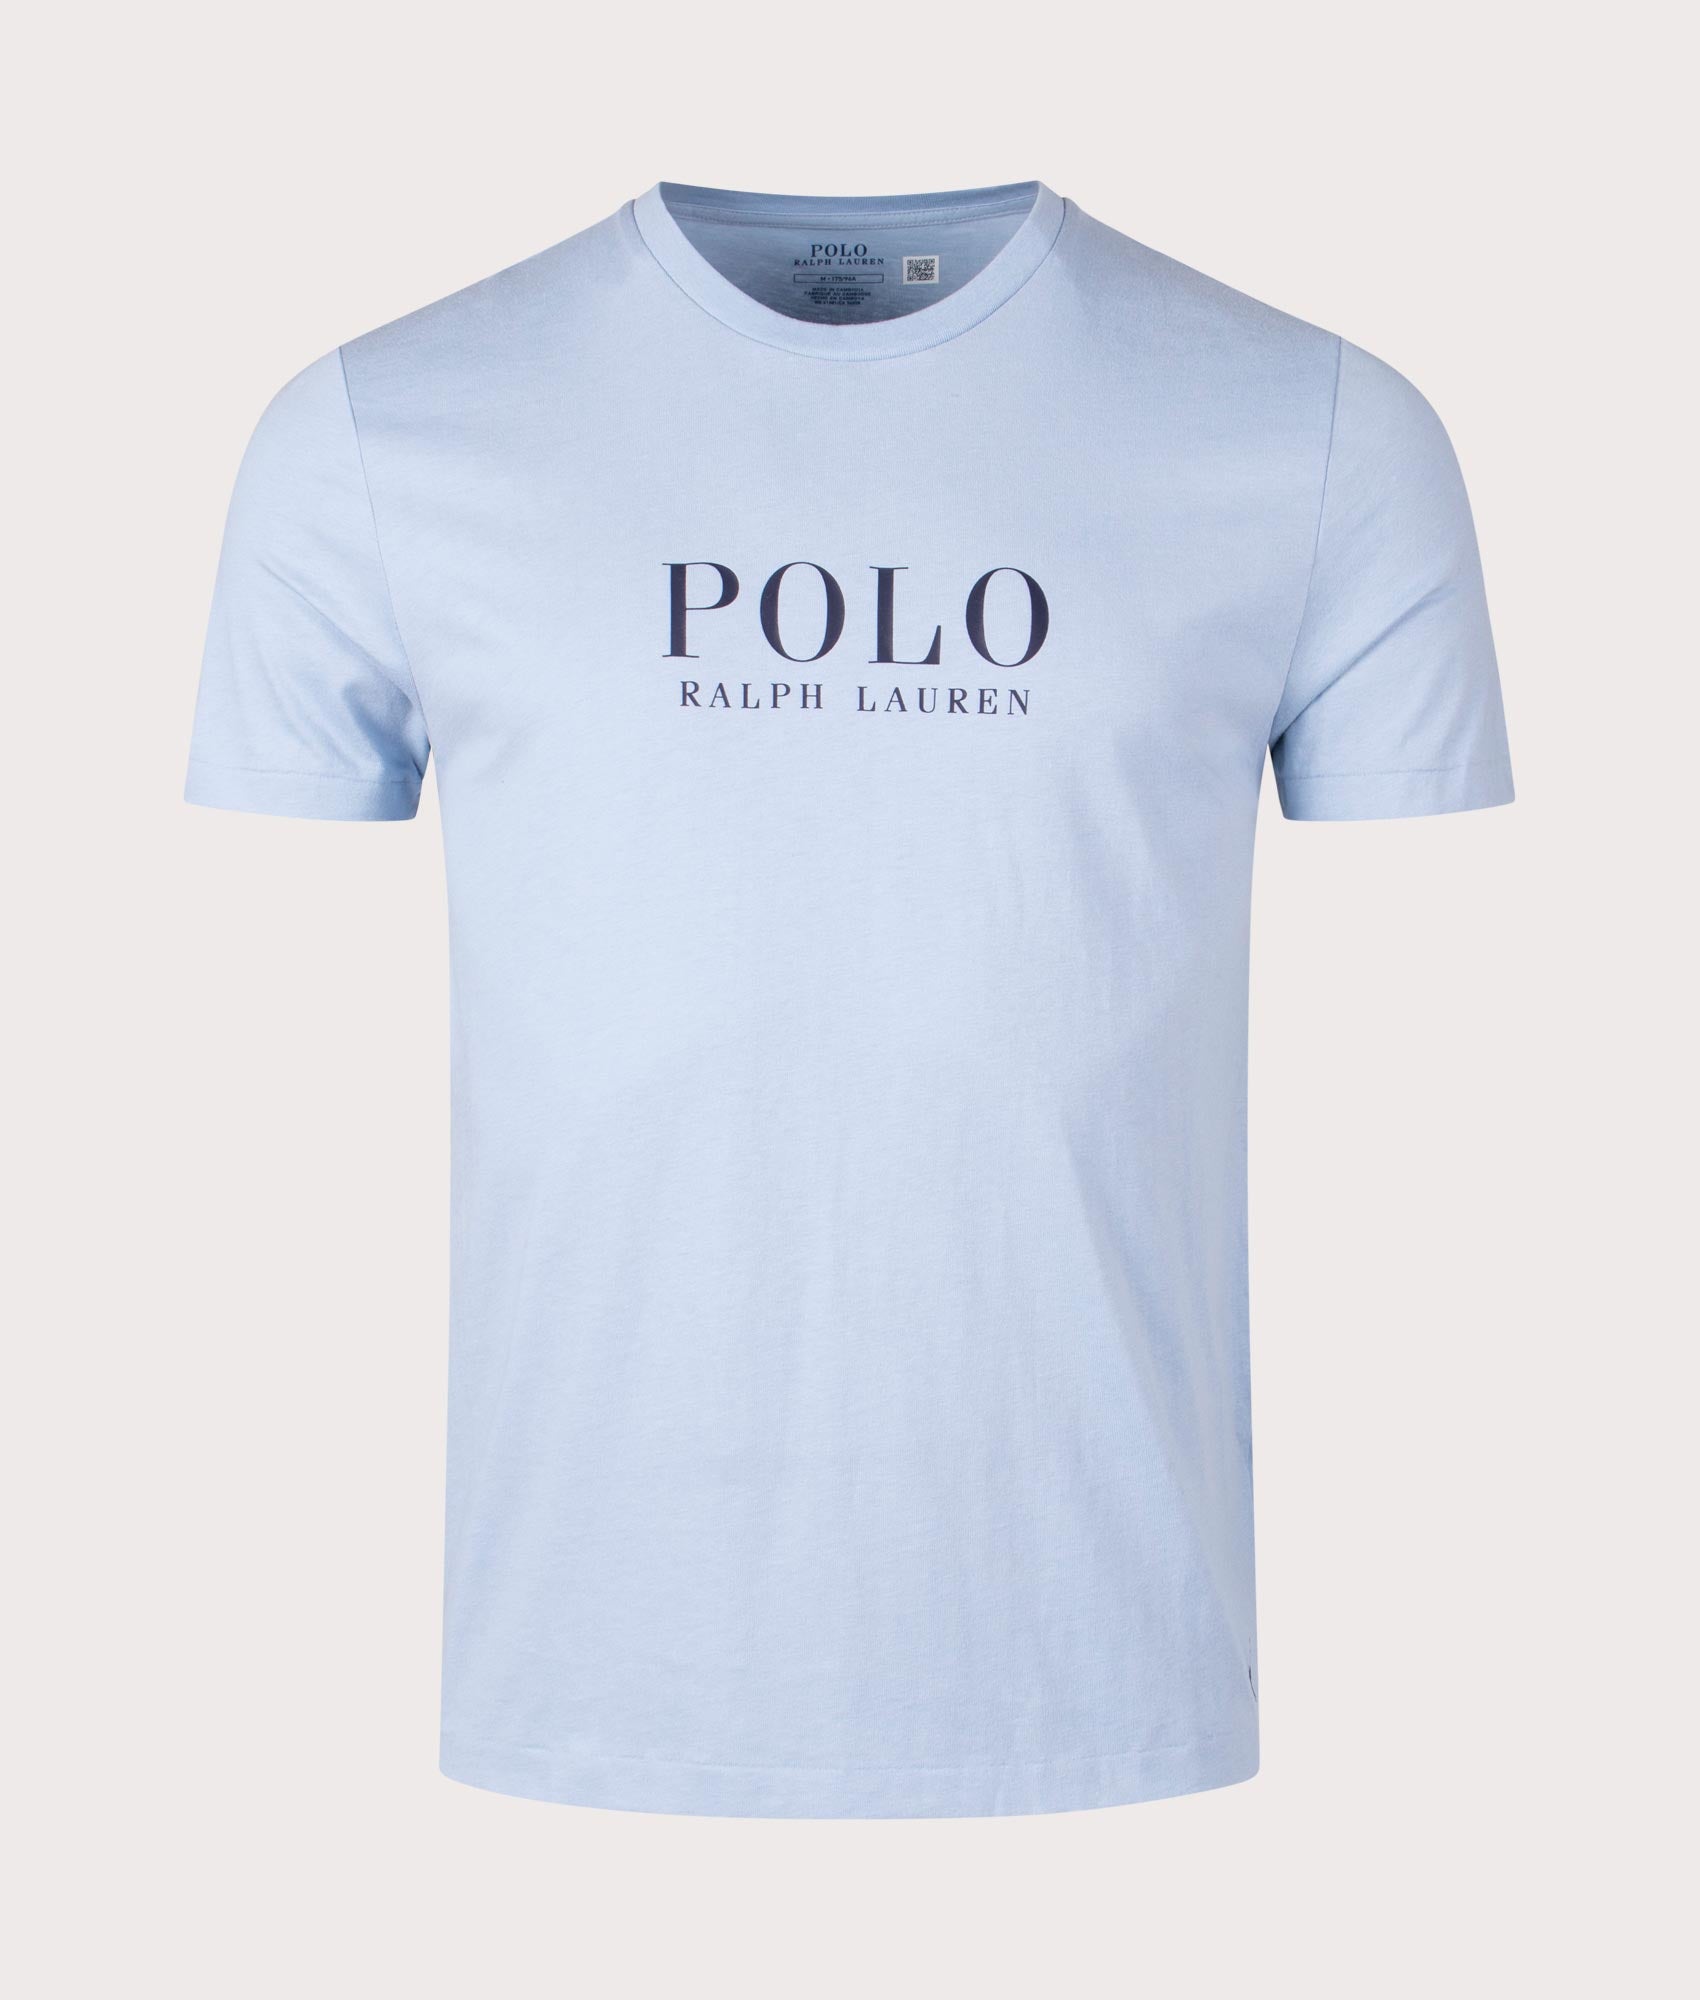 Polo Ralph Lauren Mens Lightweight Crew Neck T-Shirt - Colour: 009 Cruise Navy - Size: Medium